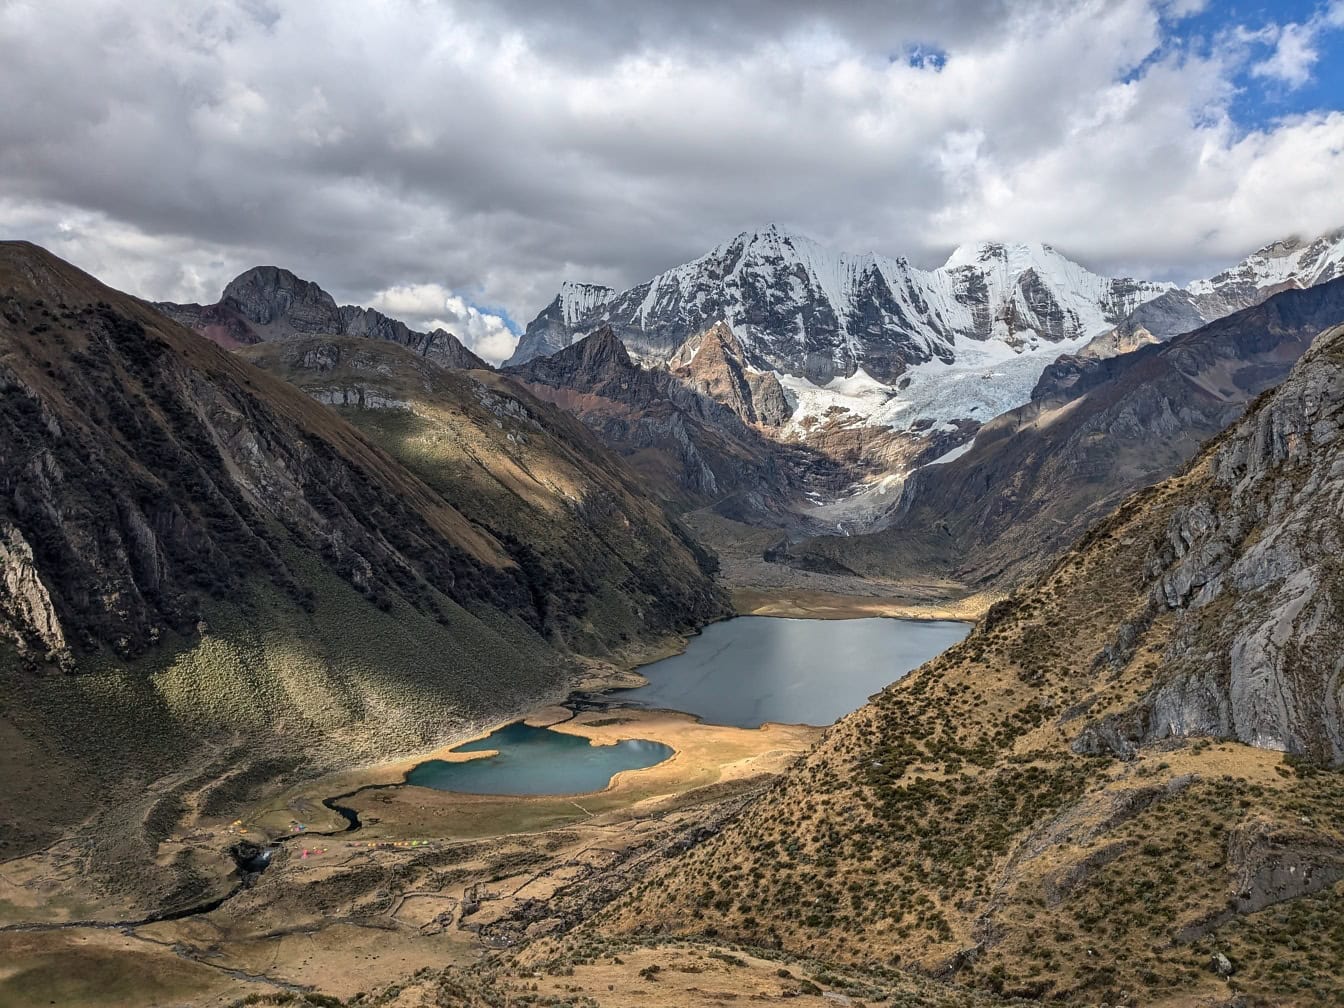 Toàn cảnh các hồ được bao quanh bởi những ngọn núi tại Cordillera Huahuash, một dãy núi ở Andes của Peru